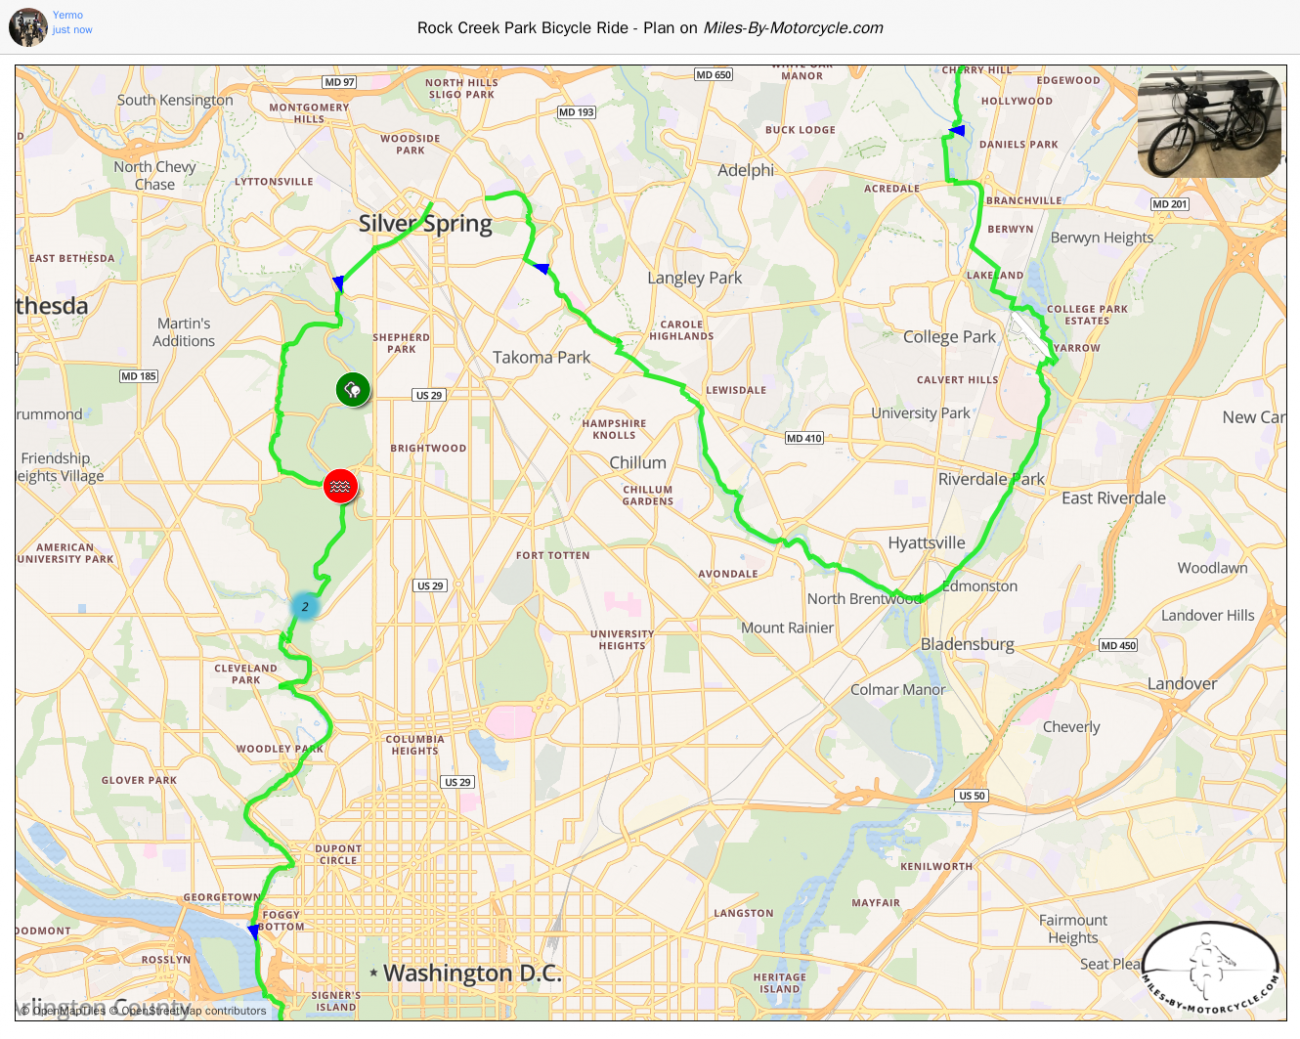 Rock Creek Park Bicycle Ride - Plan